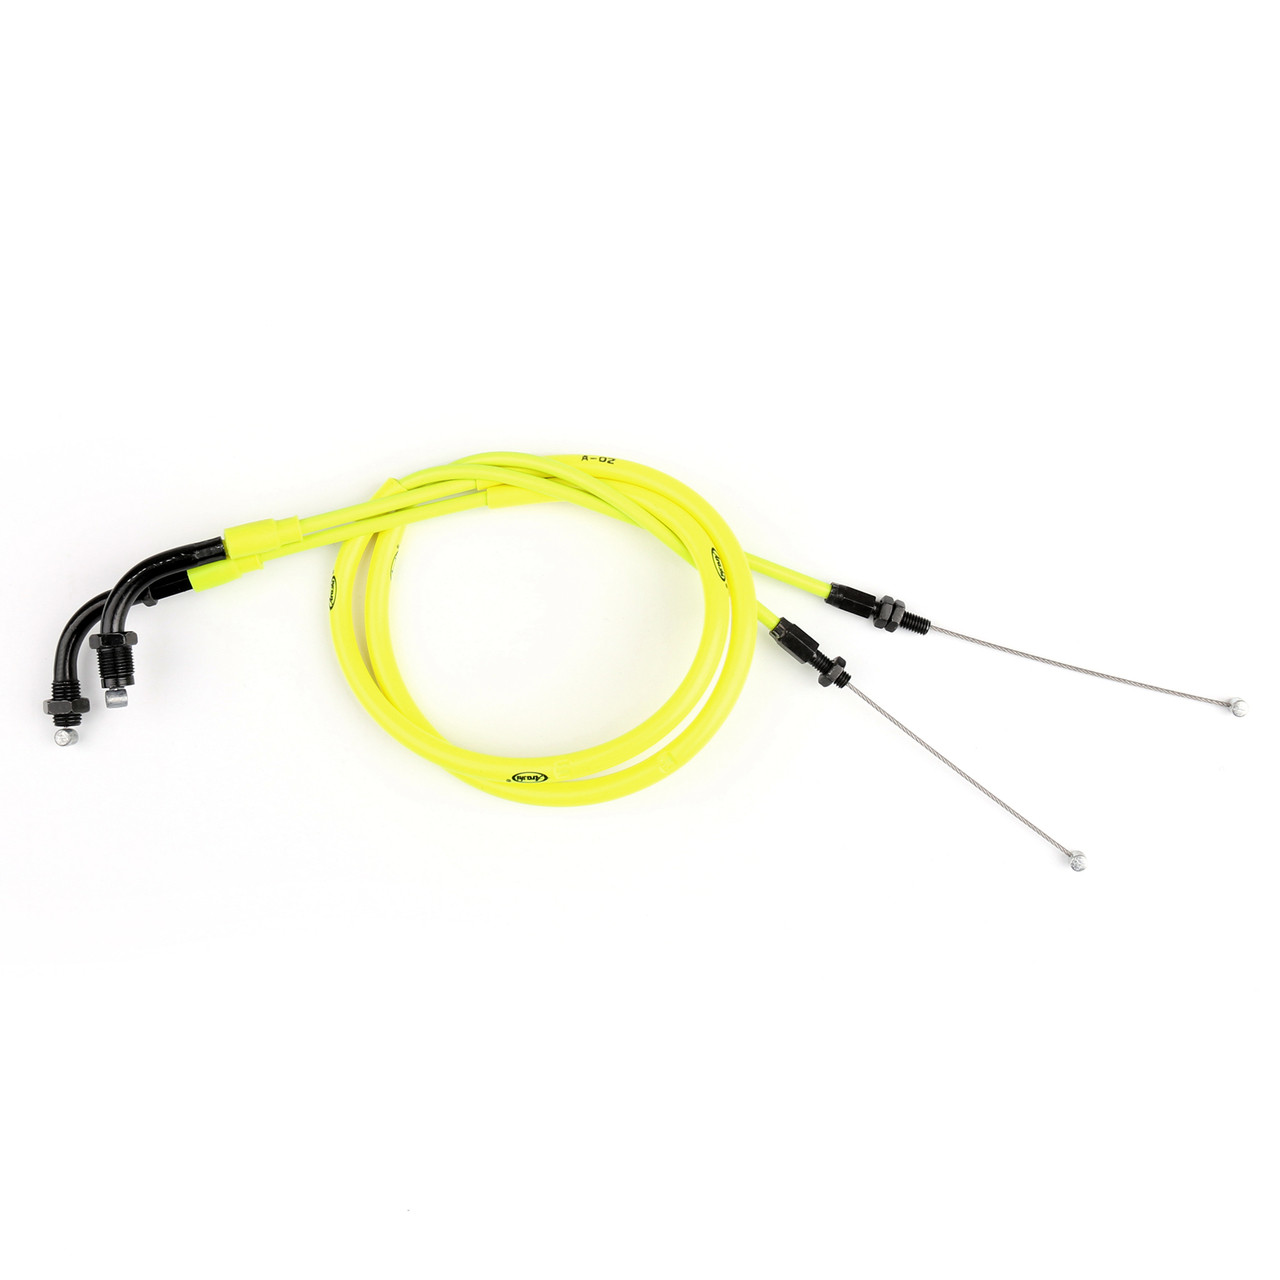 Throttle Cable Wire Line Gas Honda CBR600RR CBR 600RR (2007-2012), Neon Yellow